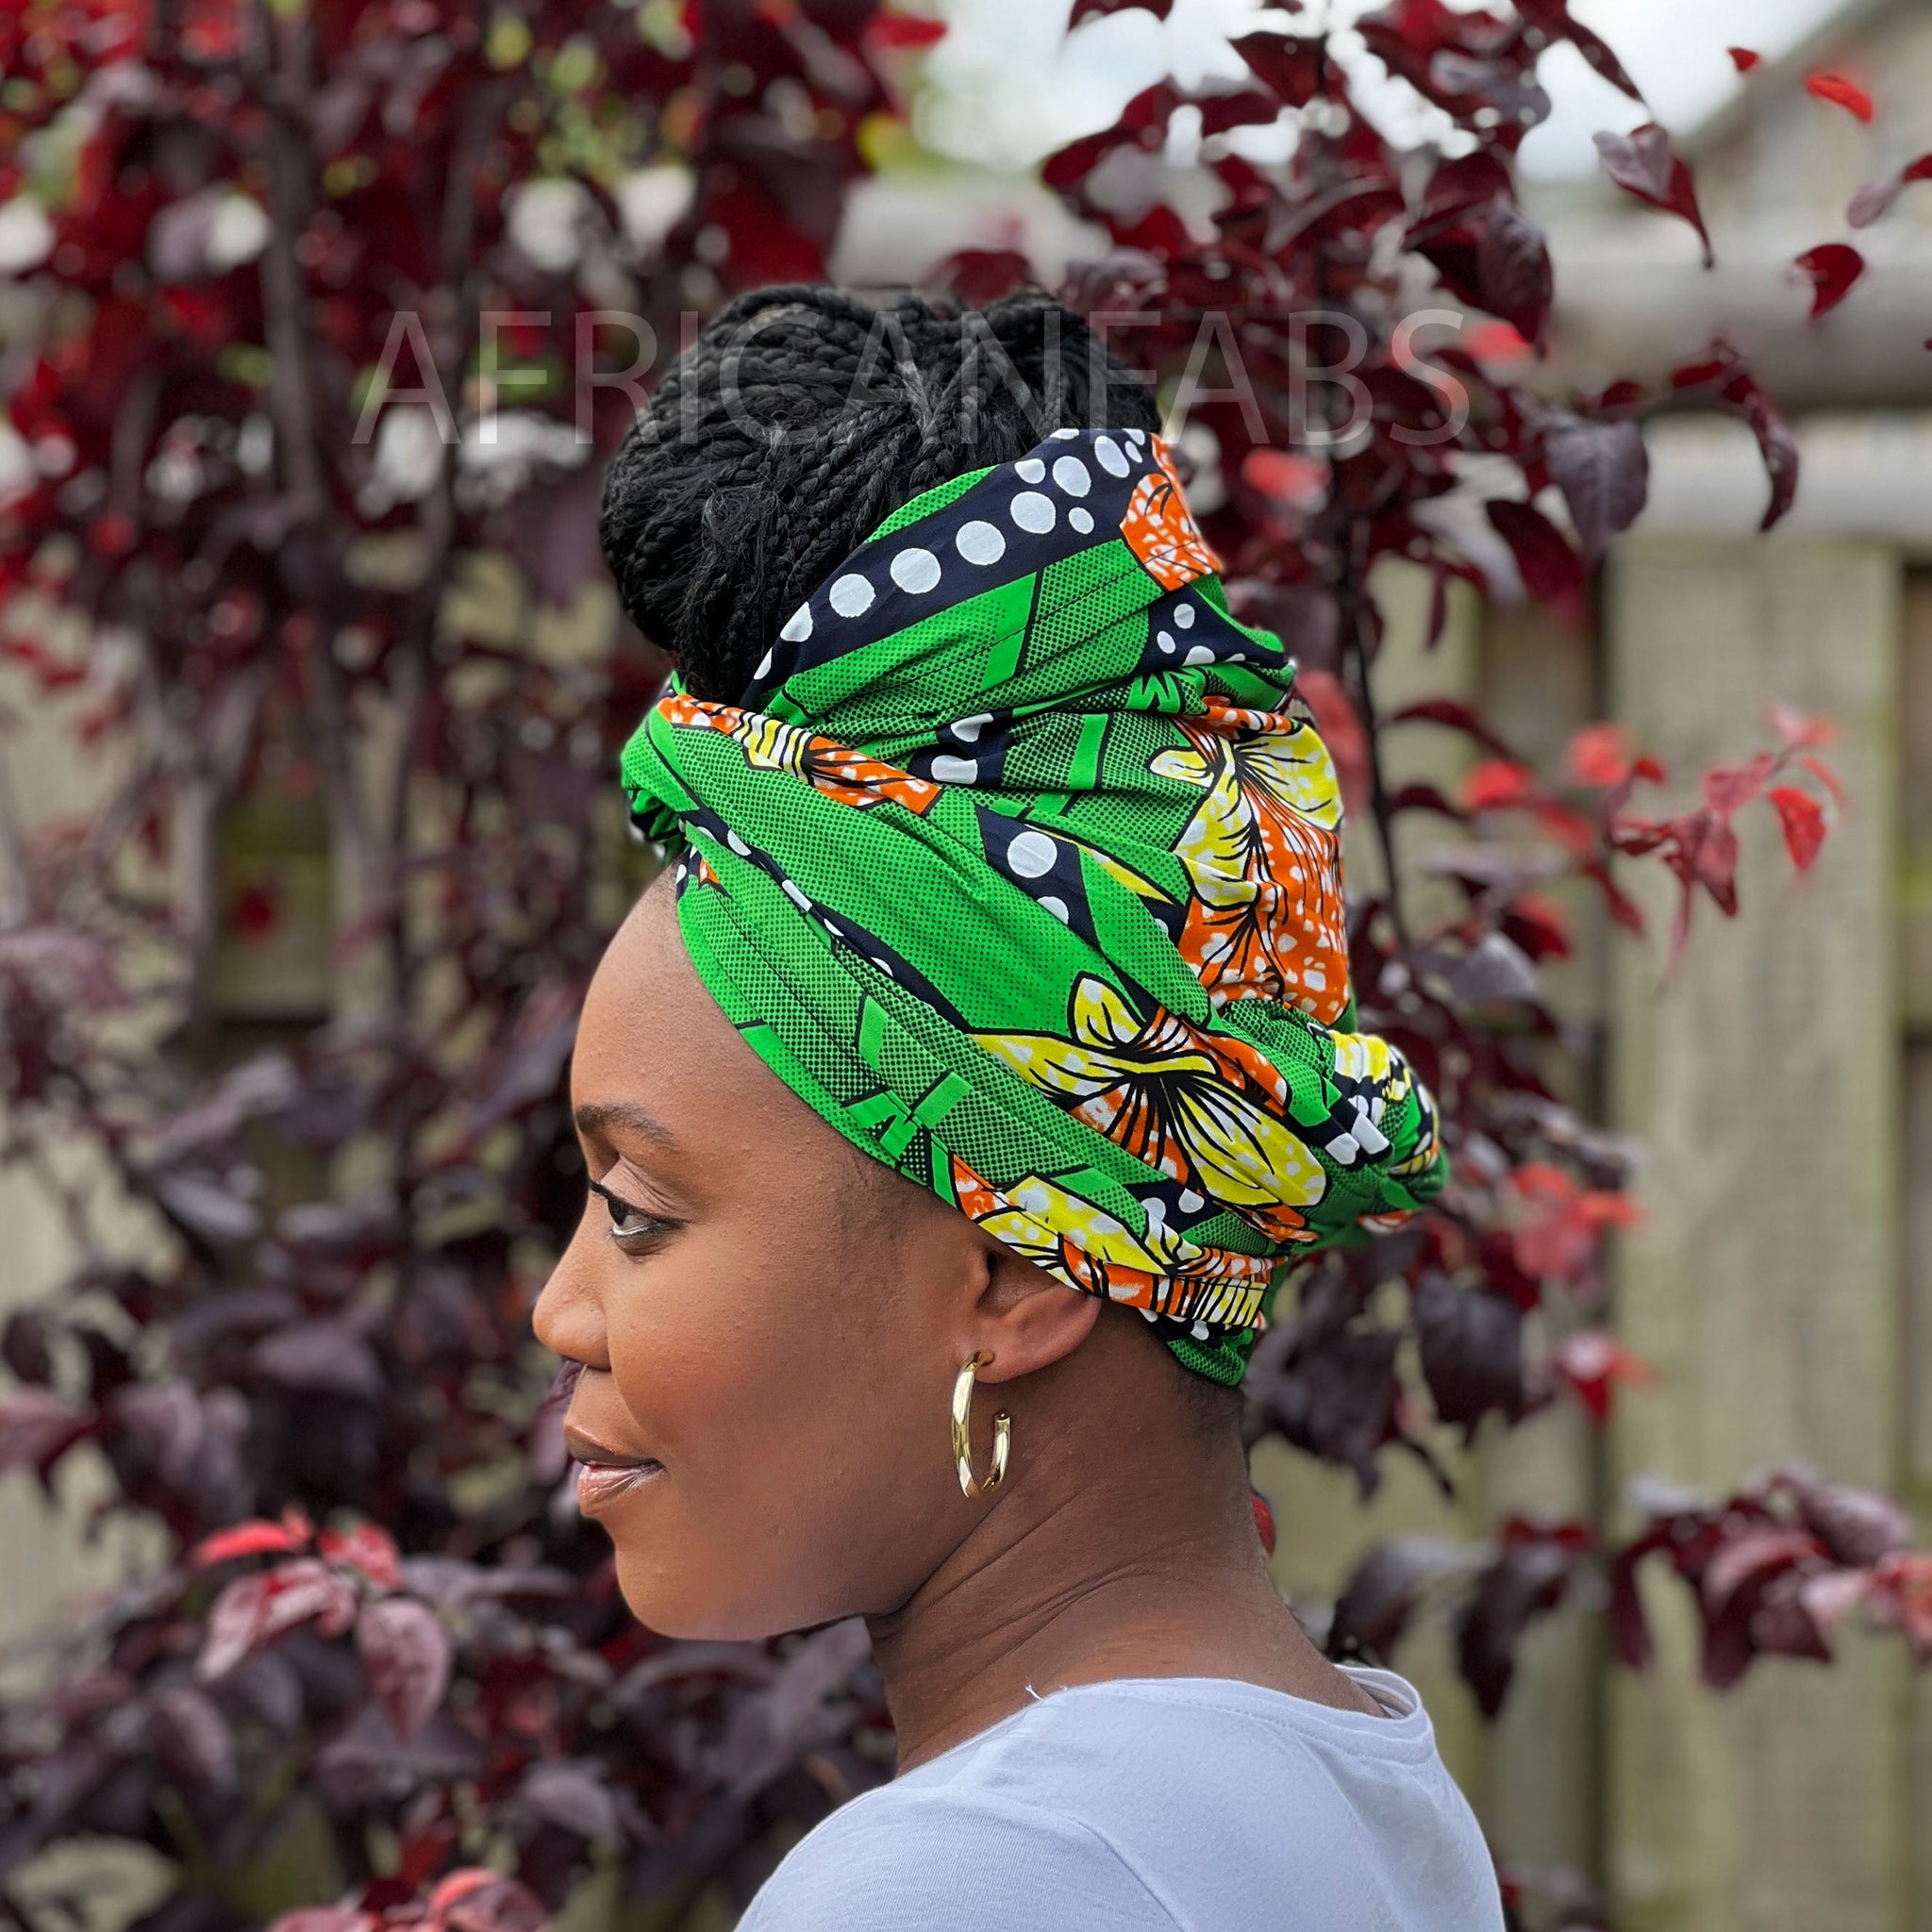 Afrikanisches Kopftuch / headwrap - Grüne Blumen